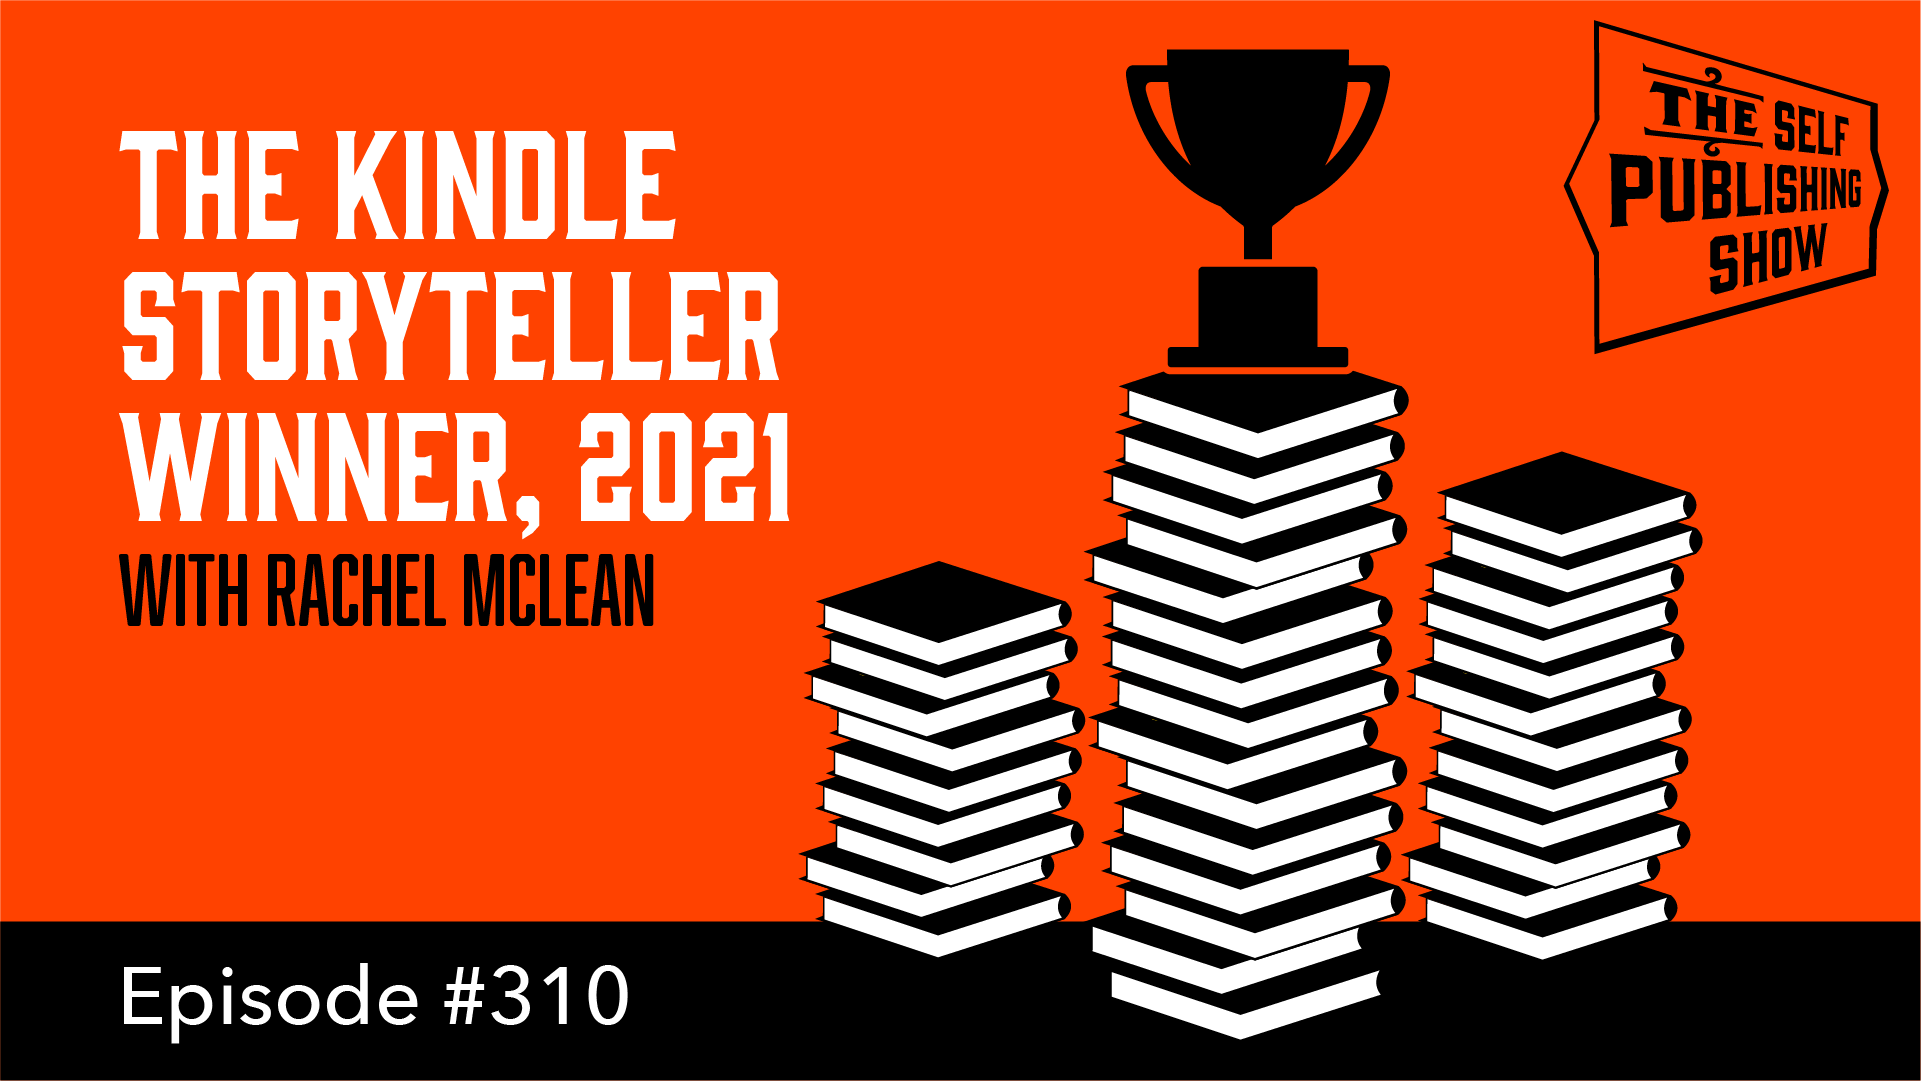 The Kindle Storyteller Winner, 2021 – with Rachel McLean